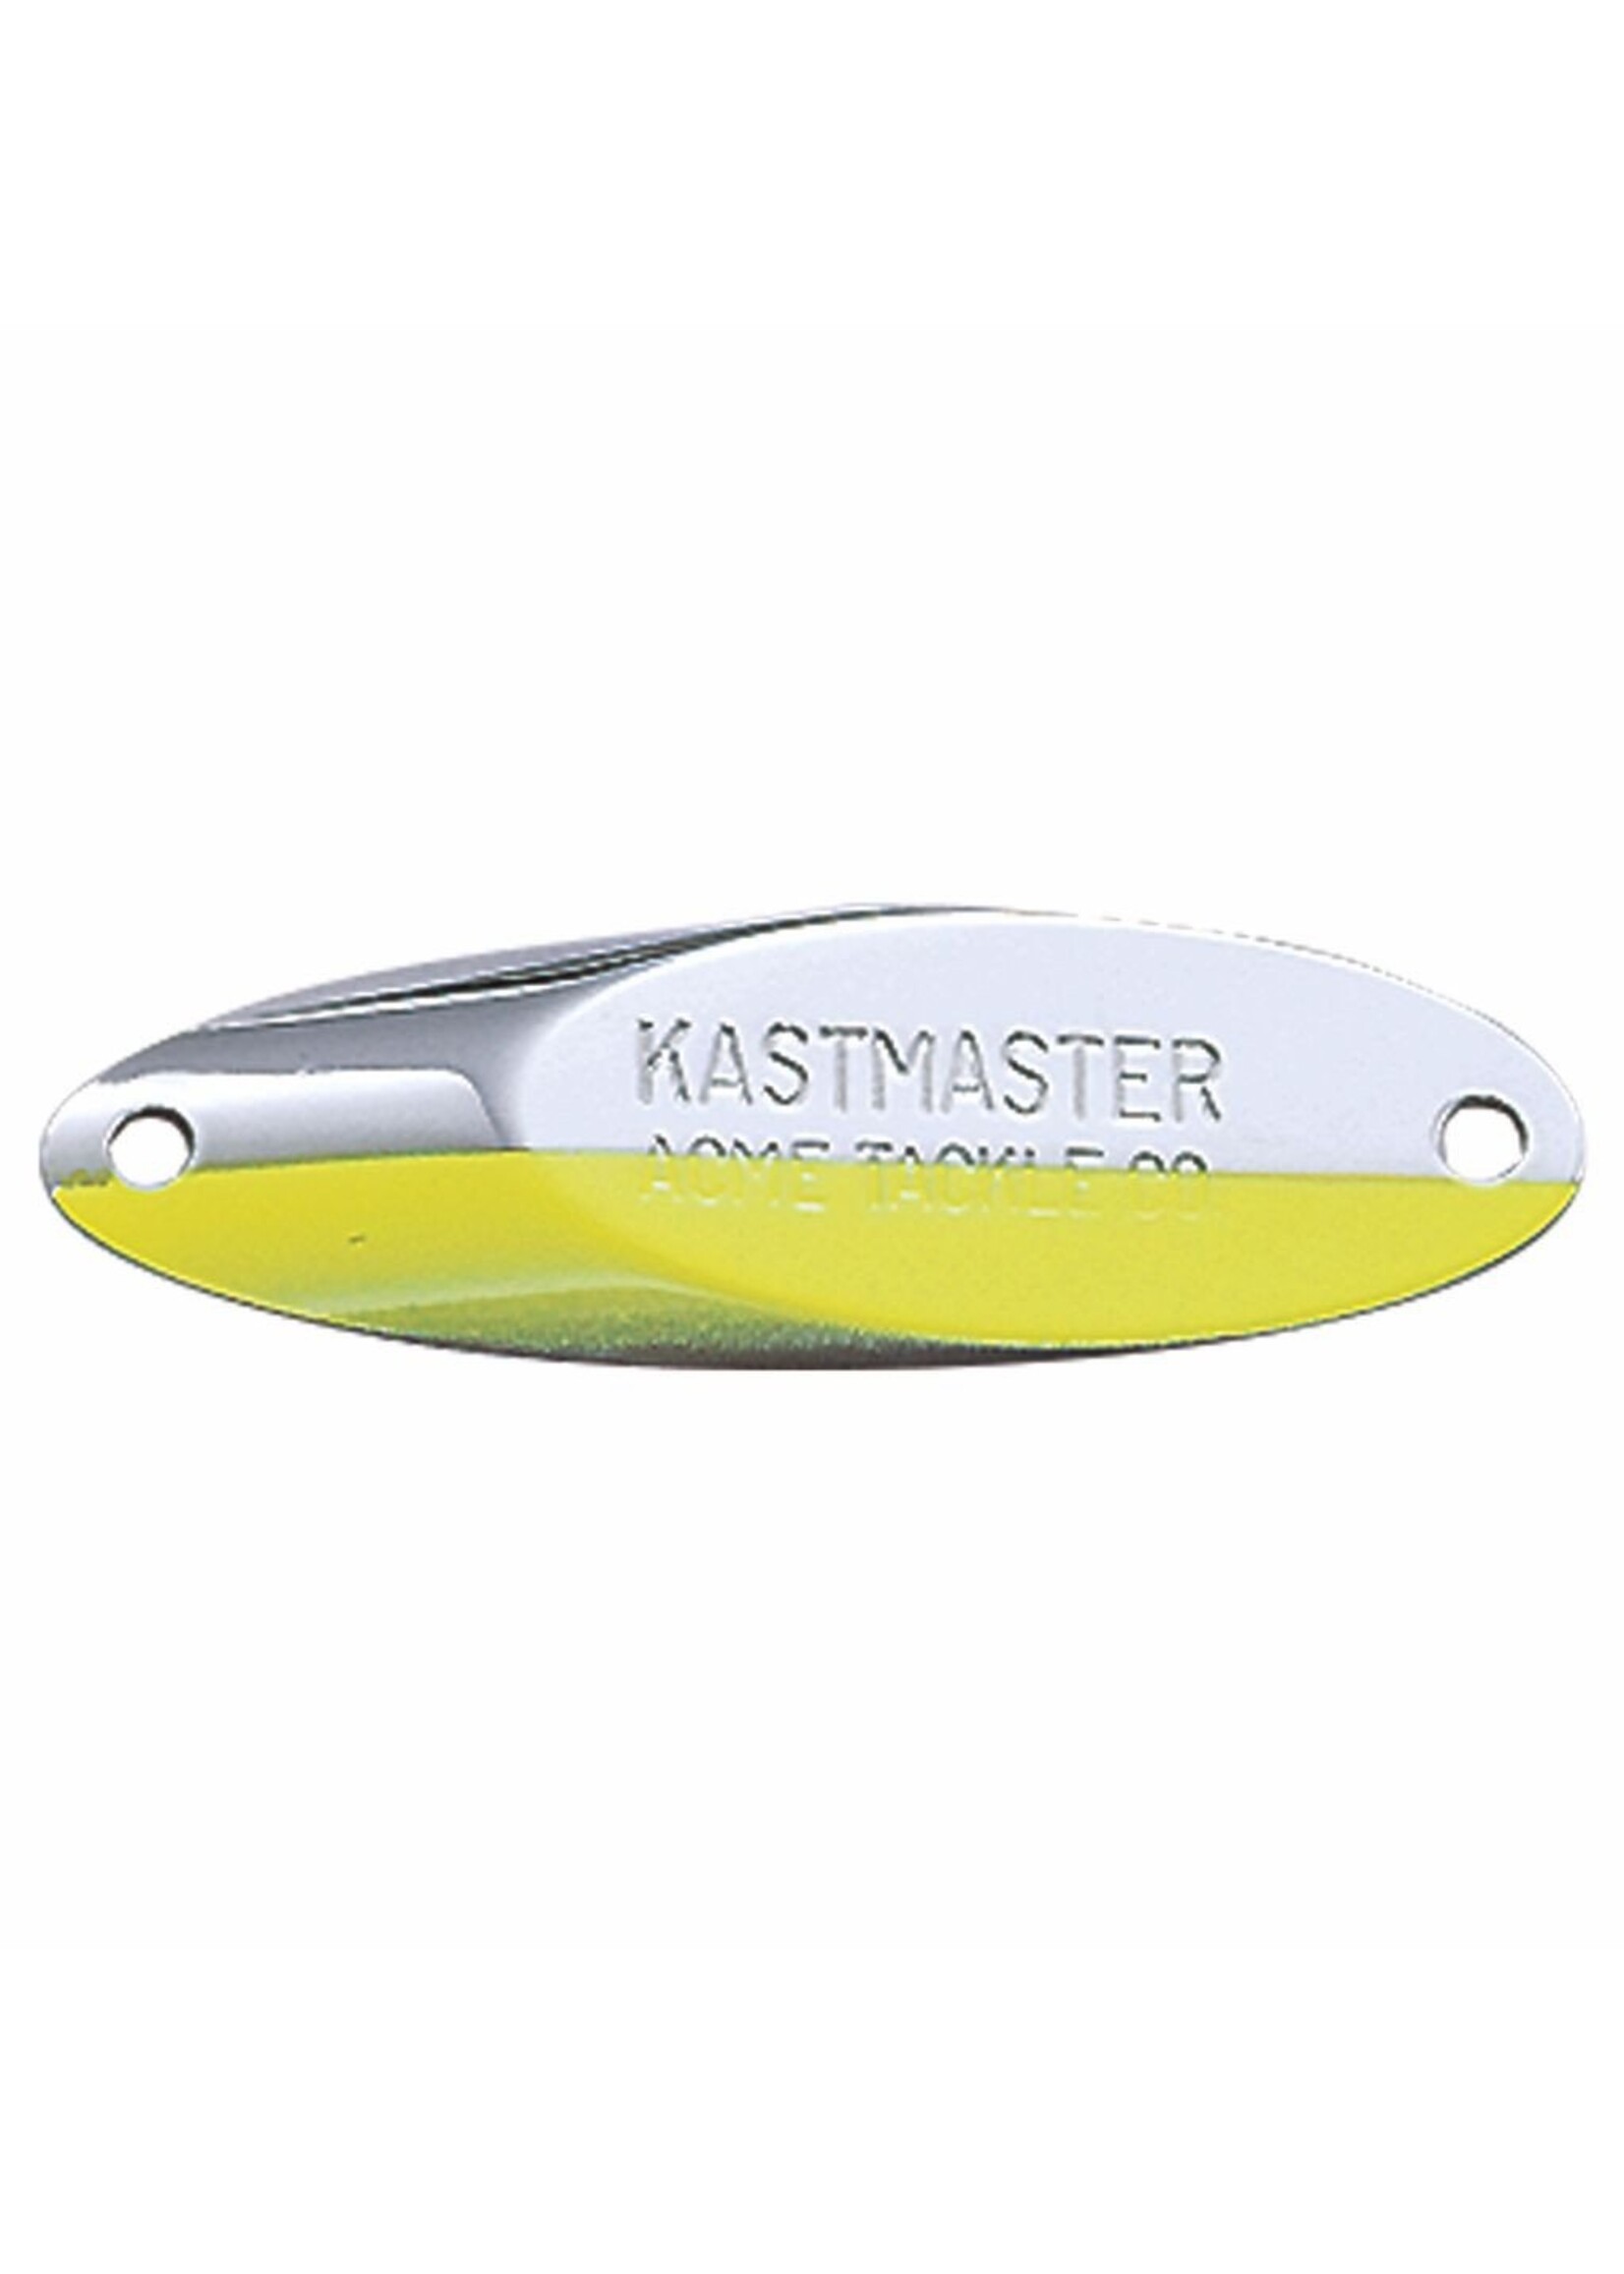 Acme Kastmaster Spoon 1/8oz